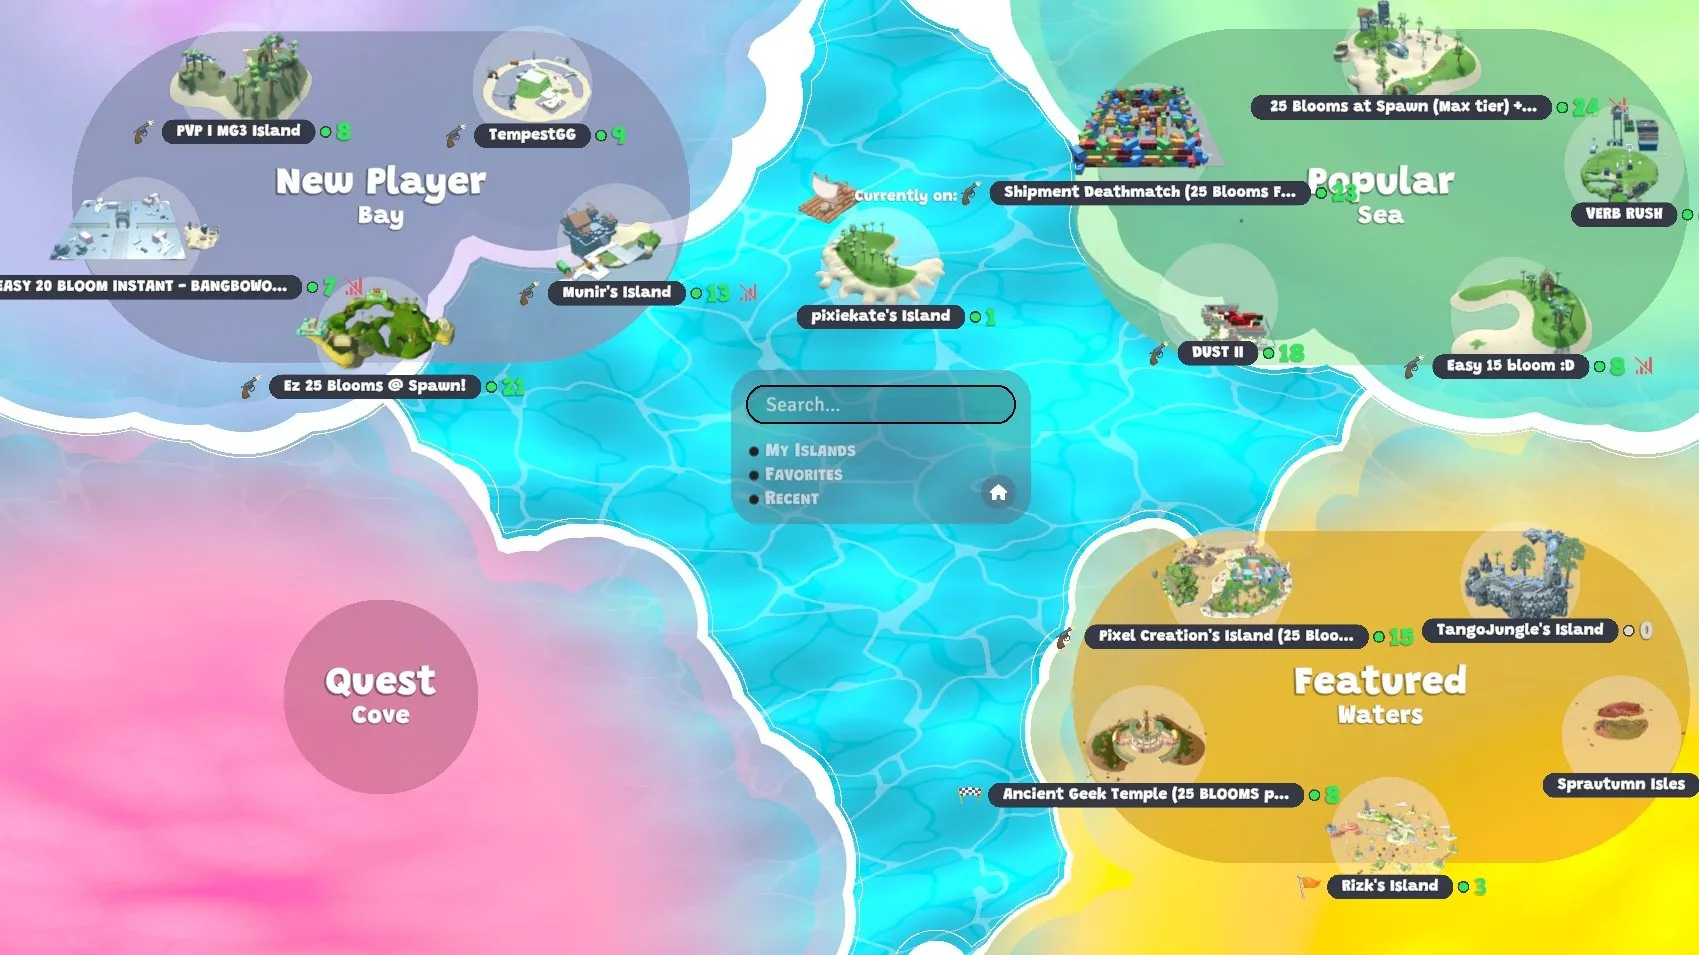 Captura de tela do jogo mostrando um mapa com ilhas populares, ilhas "em destaque" e ilhas voltadas para novos jogadores.